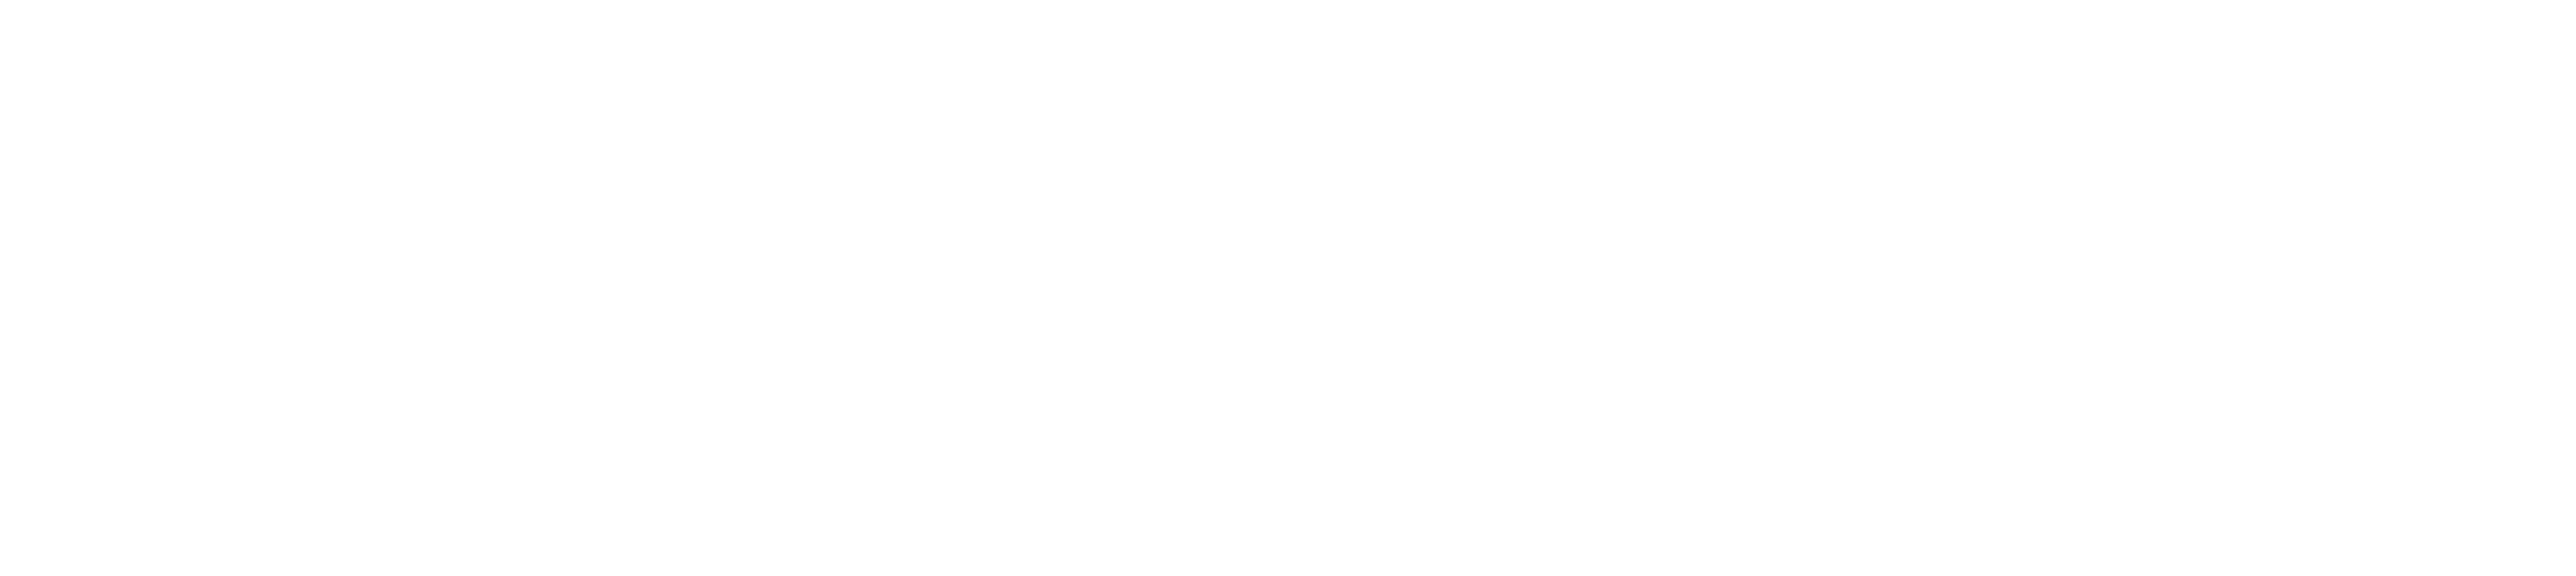 circolo delle formiche logo